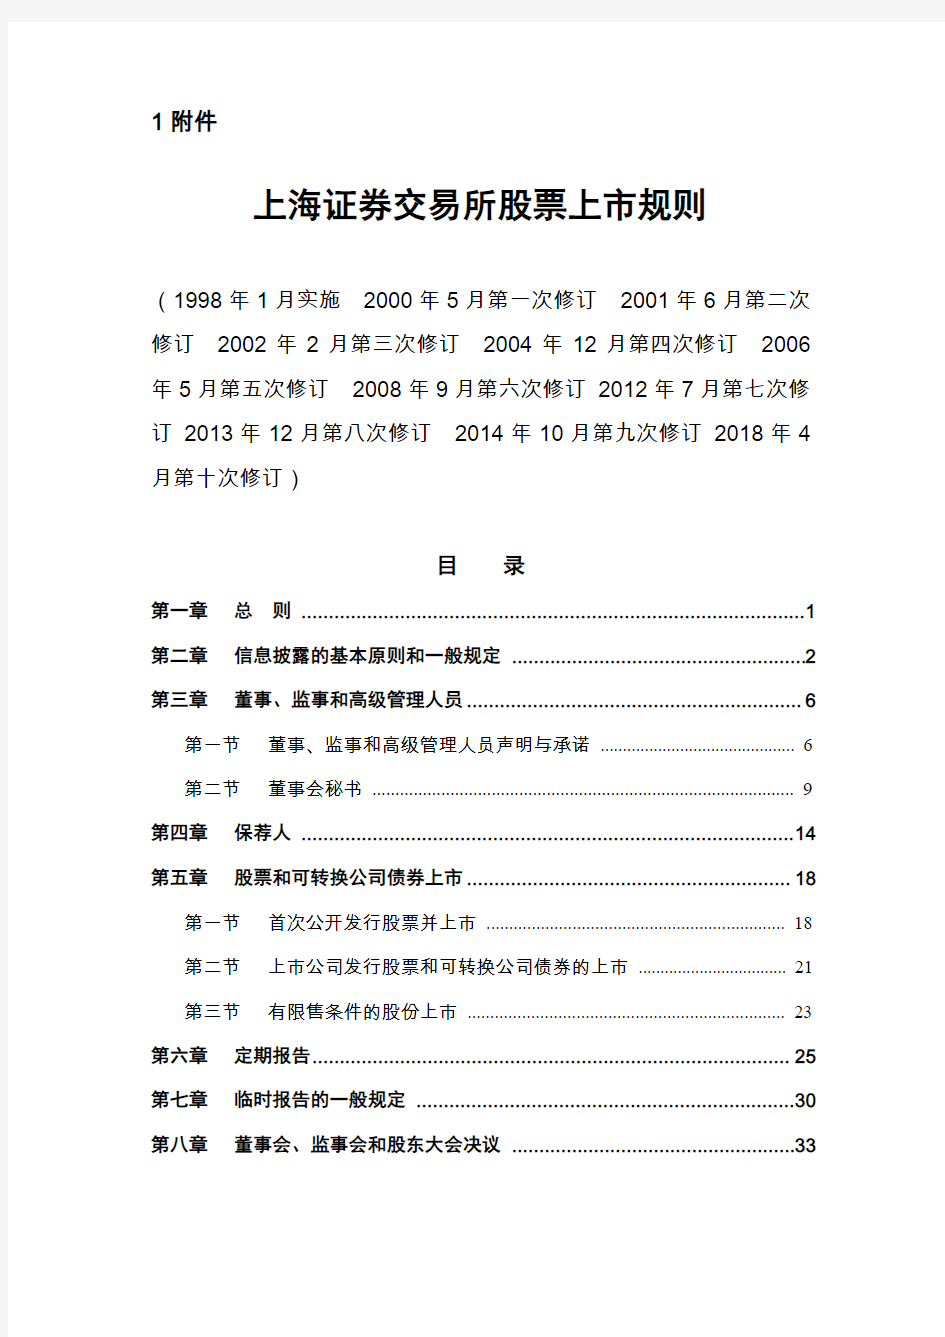 上海证券交易所股票上市规则(2018年4月修订)